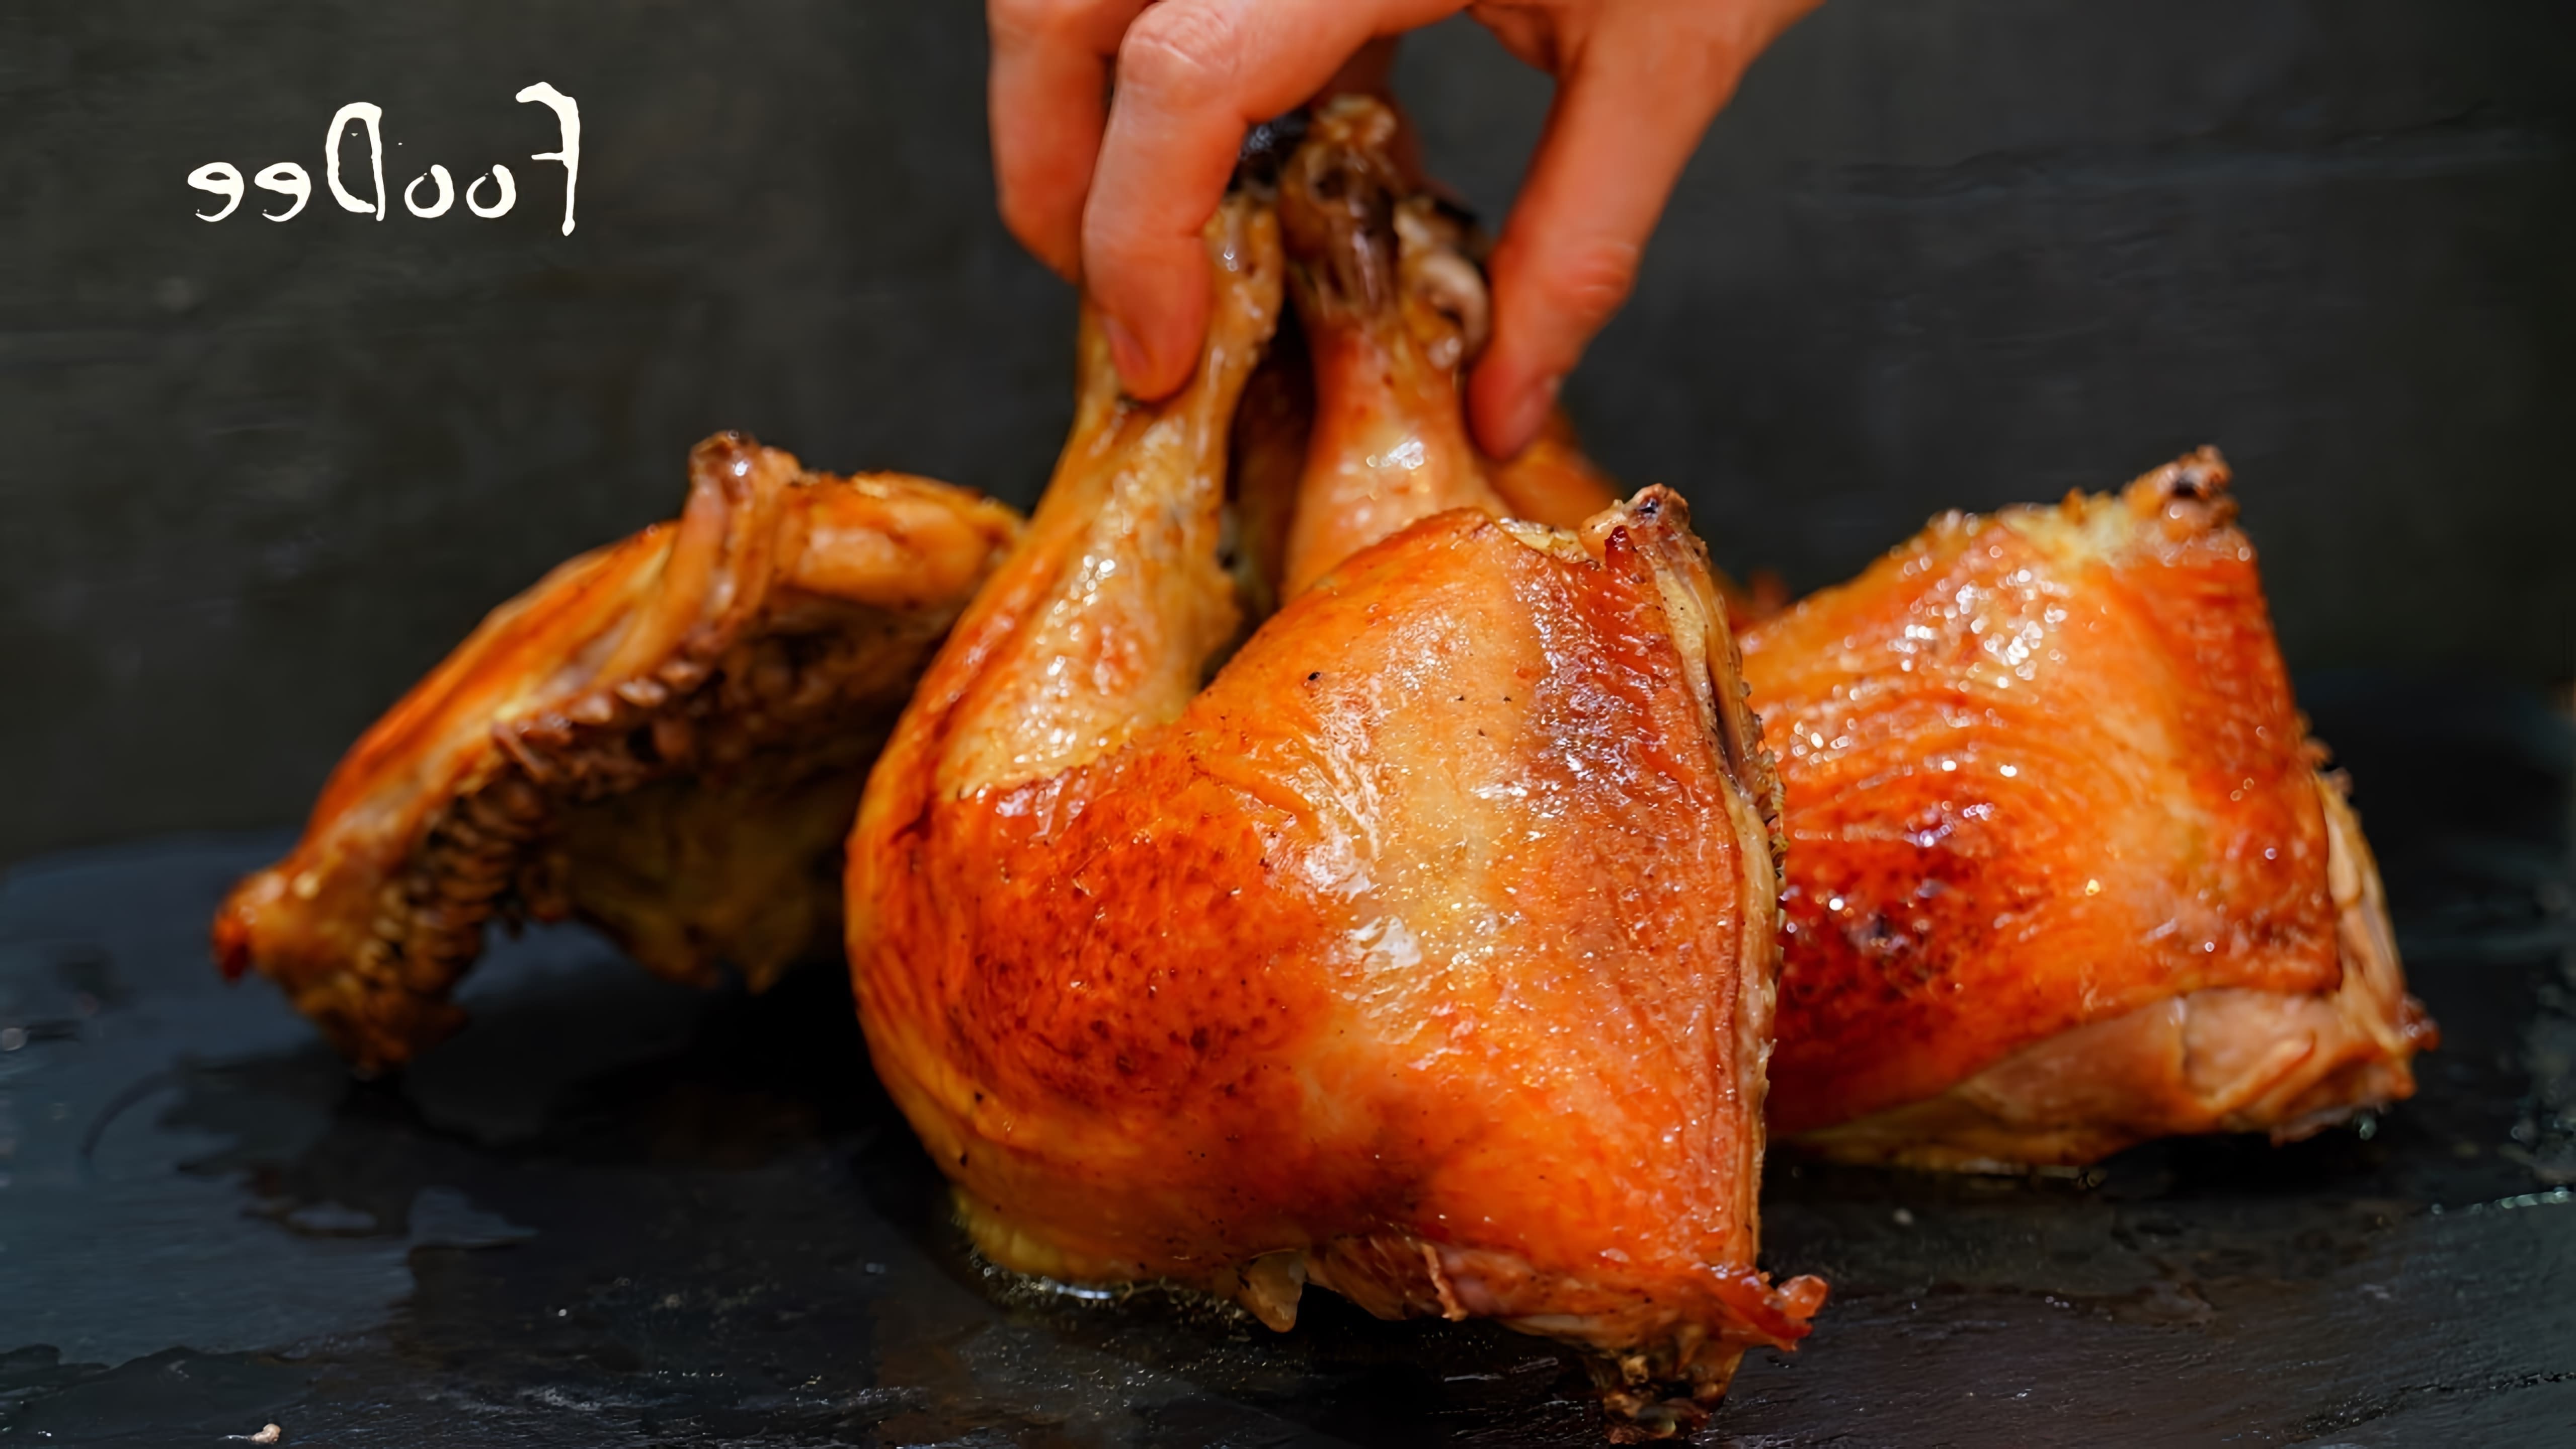 В этом видео демонстрируется рецепт приготовления куриных окорочков в духовке